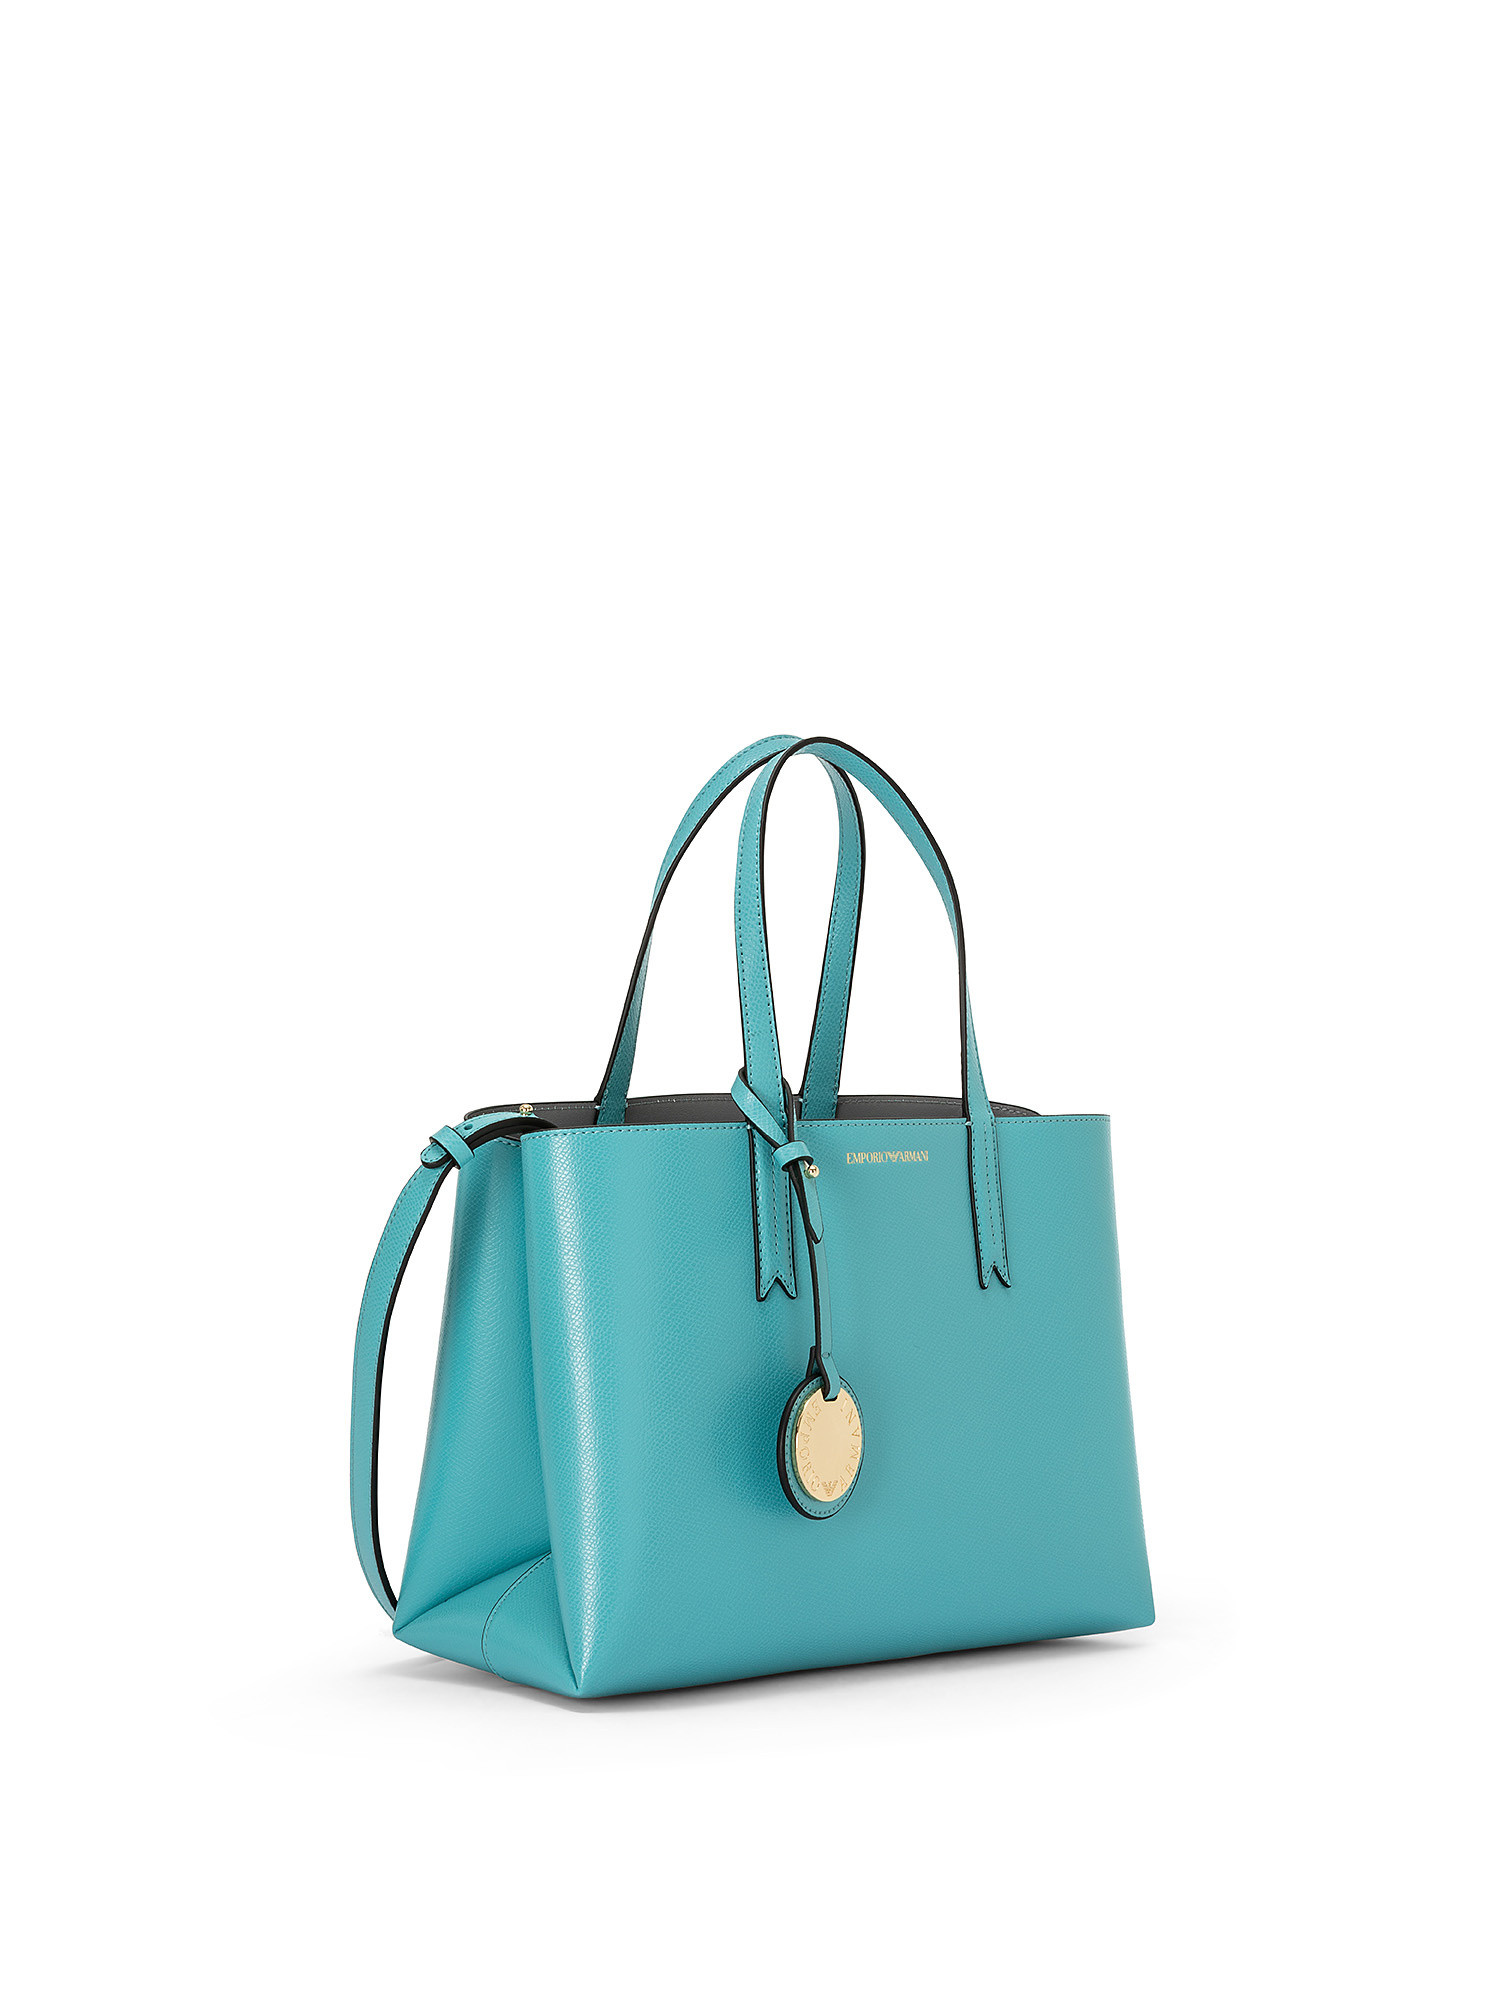 Shopping bag, Azzurro, large image number 1